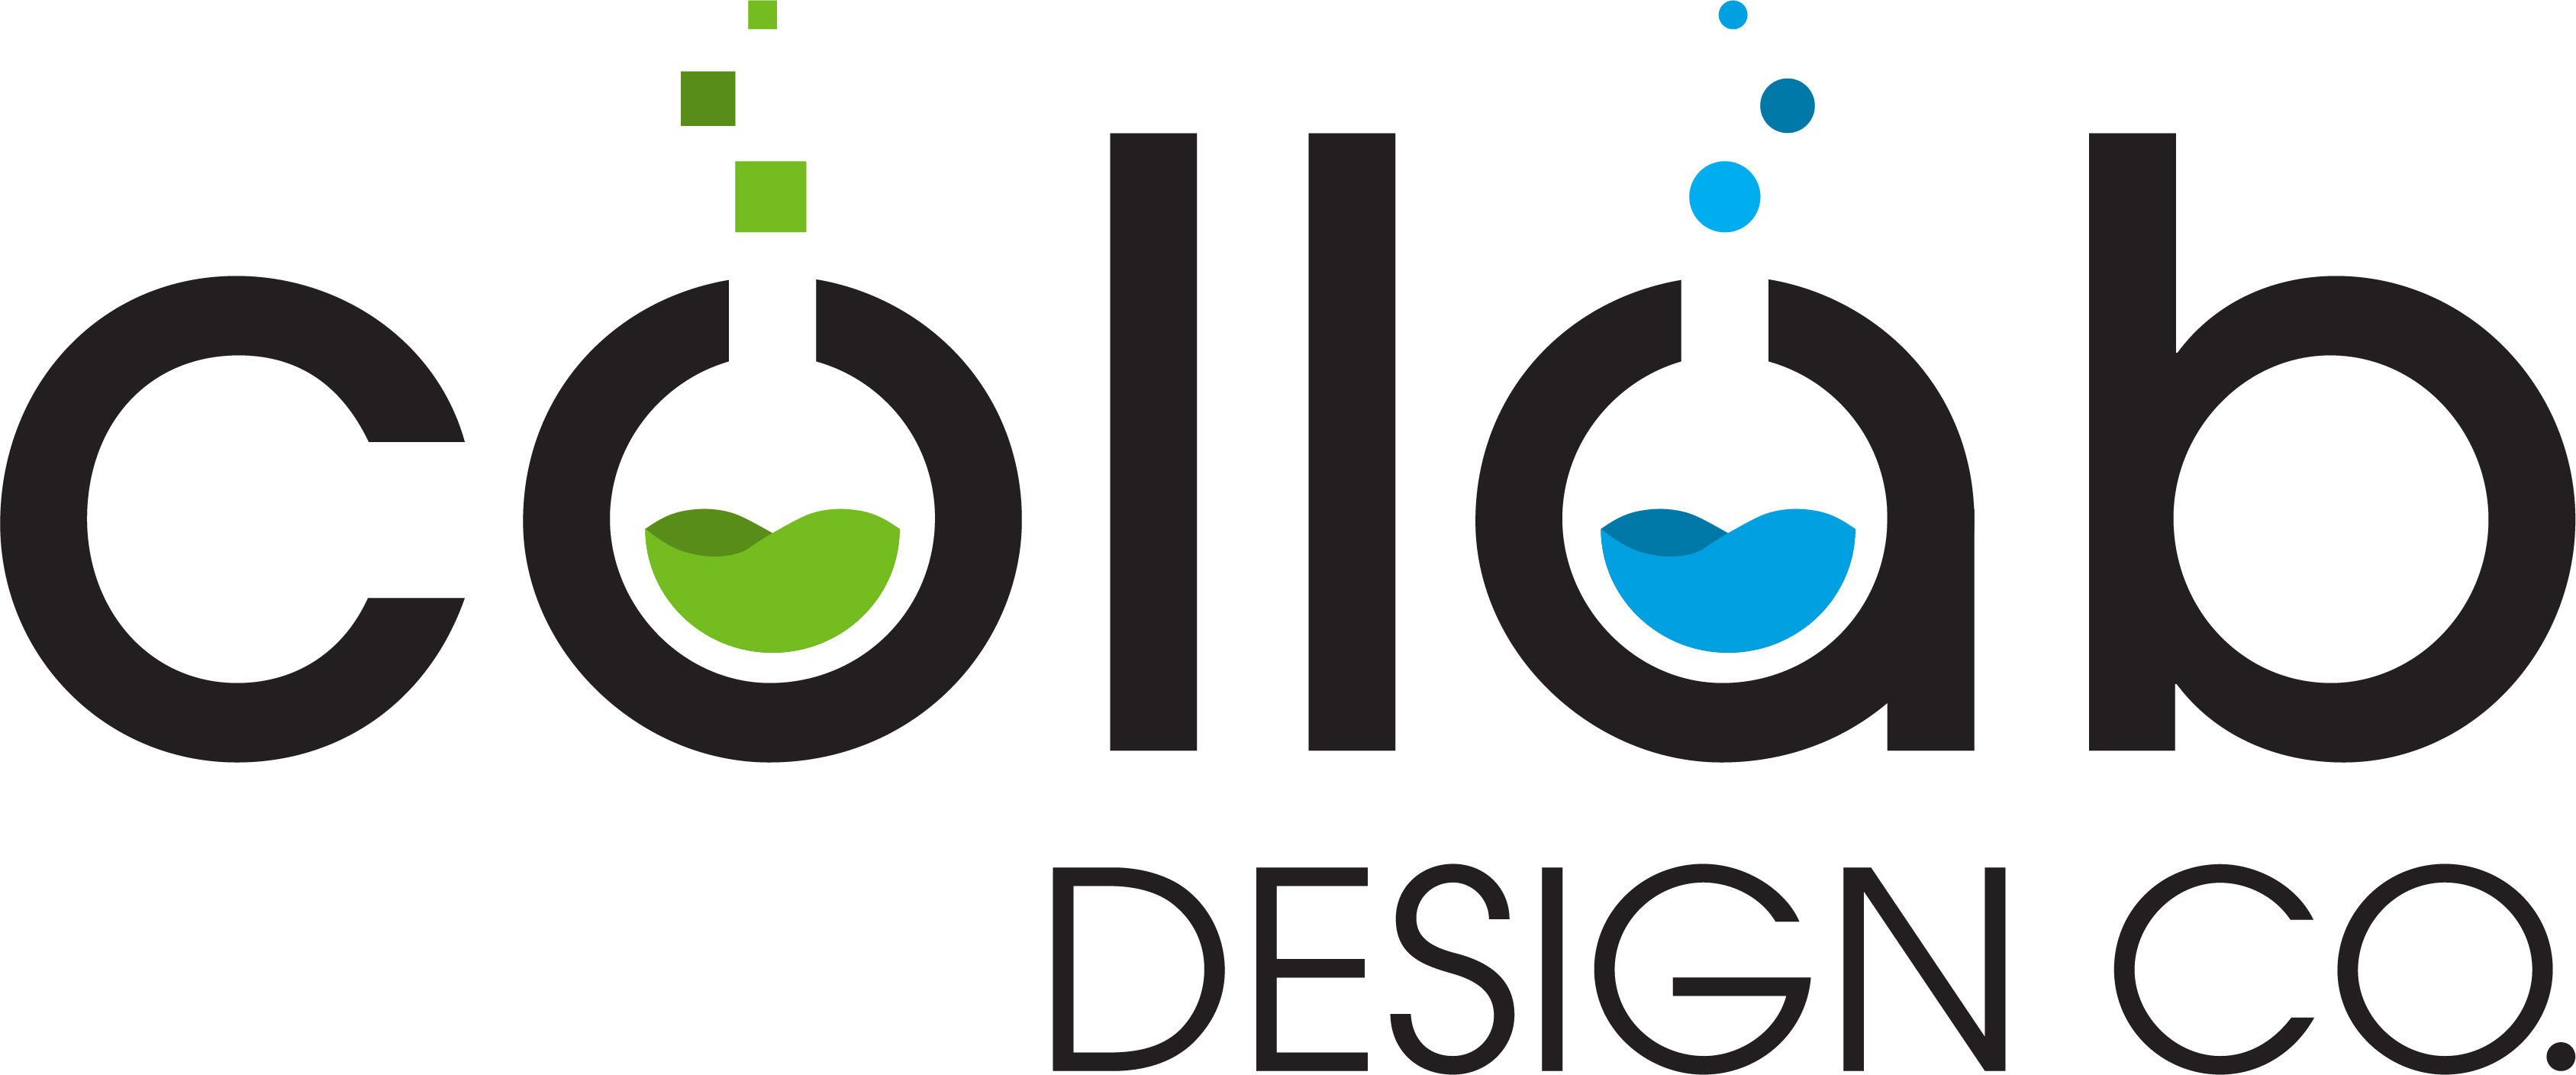 Collab Design Co.